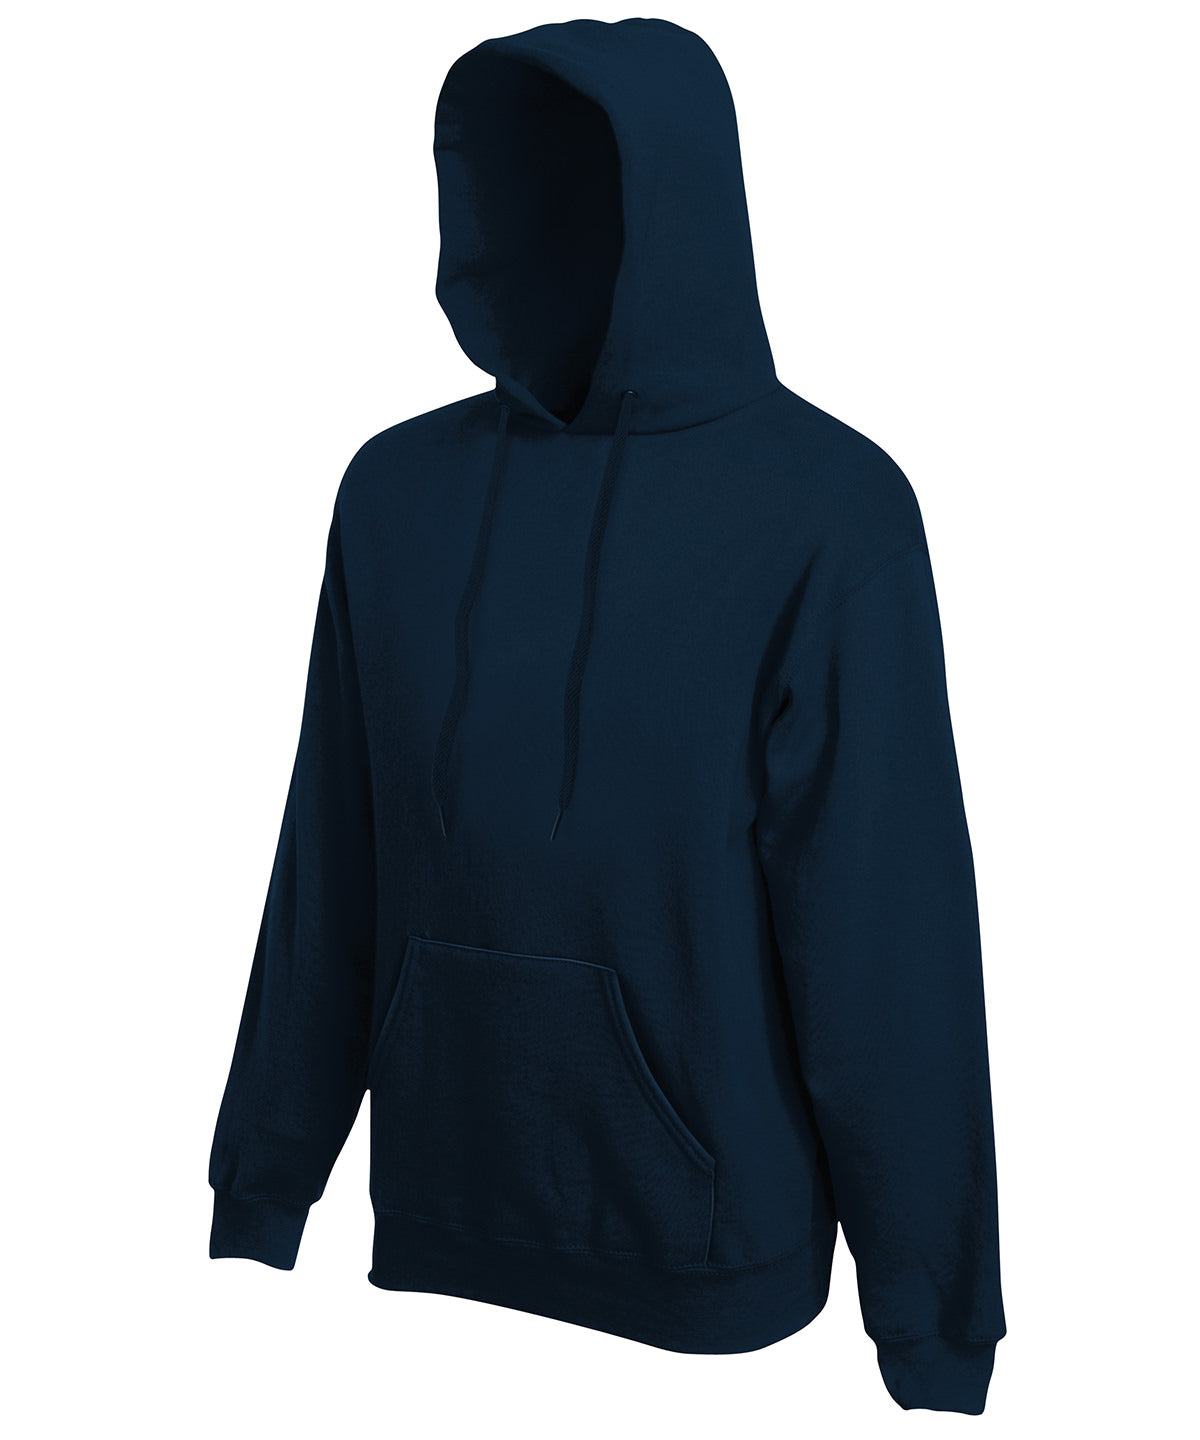 Hettupeysur - Premium 70/30 Hooded Sweatshirt